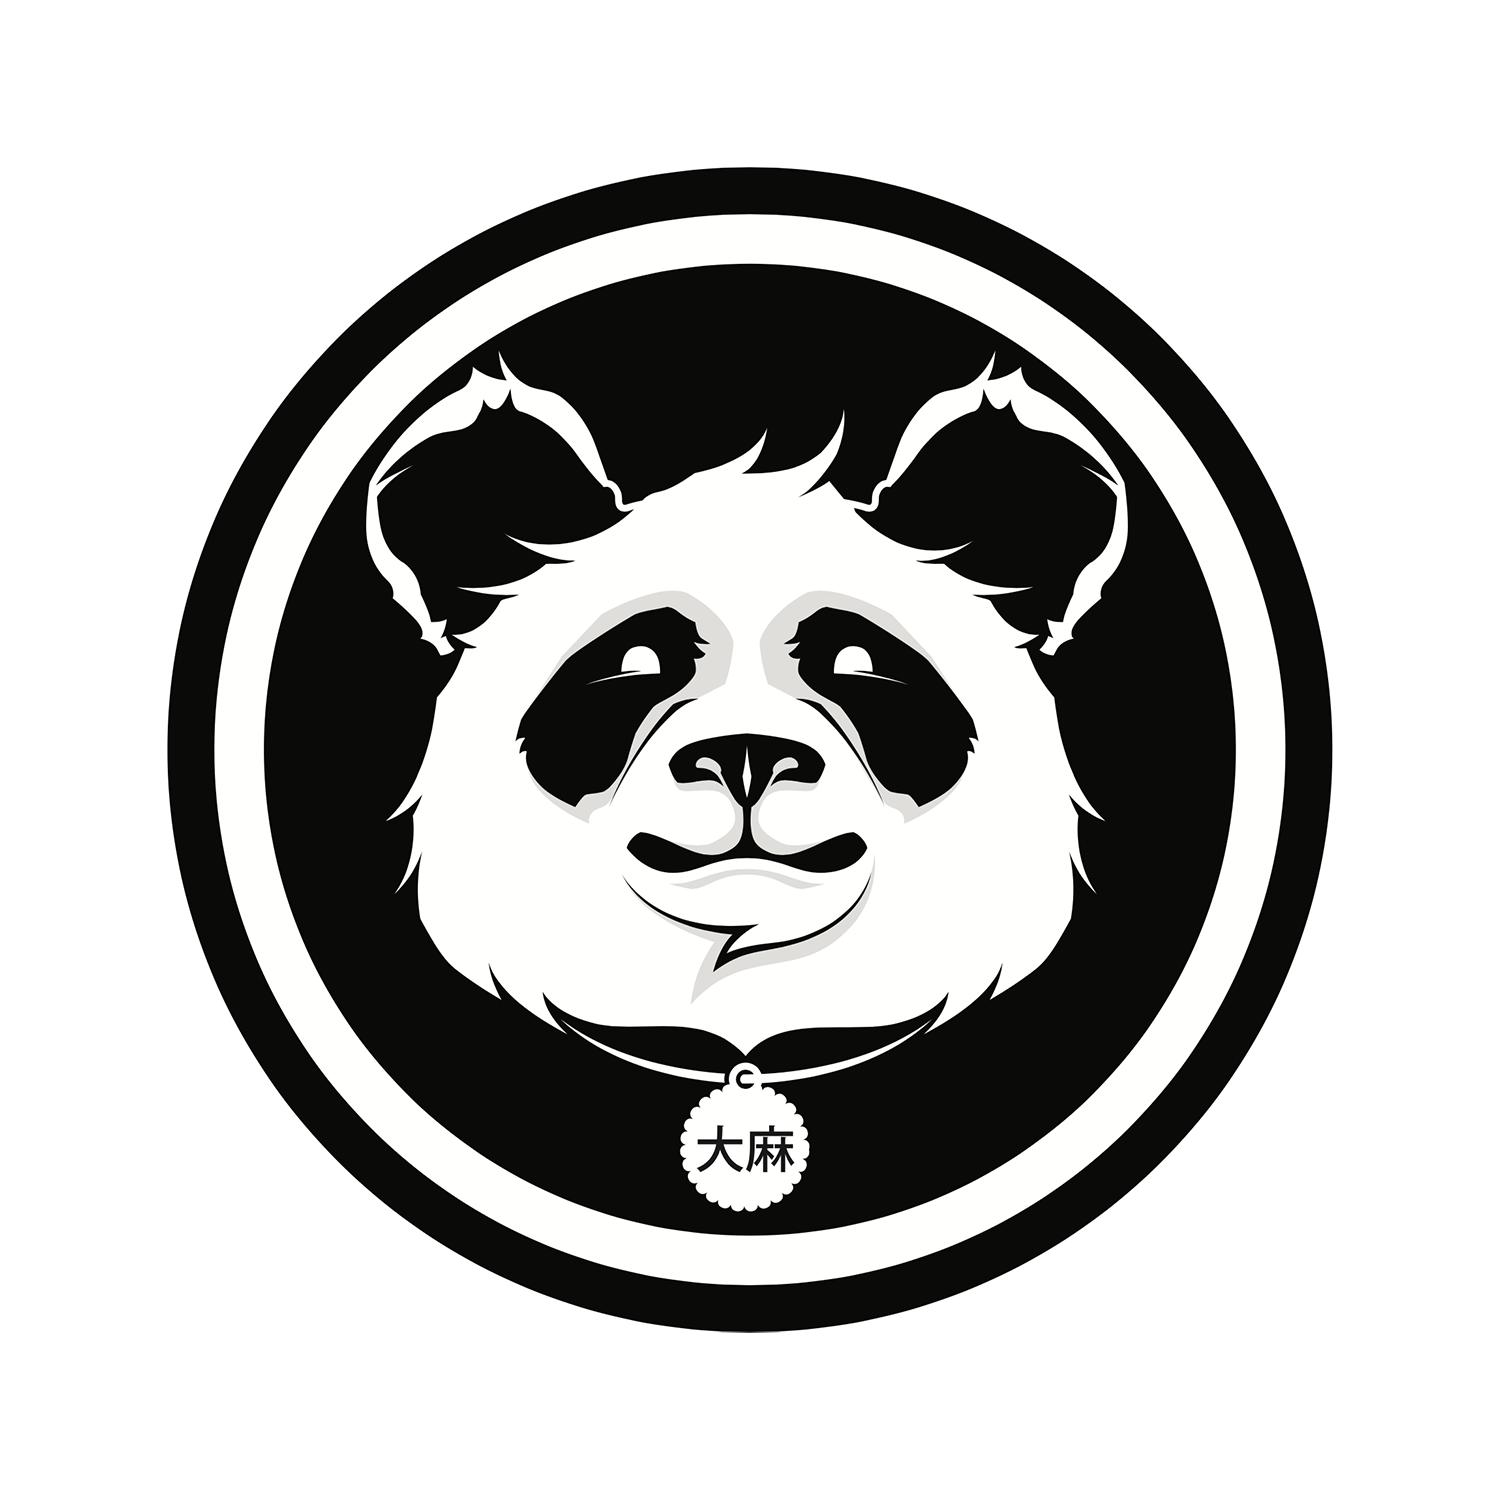 stoned panda logo.png